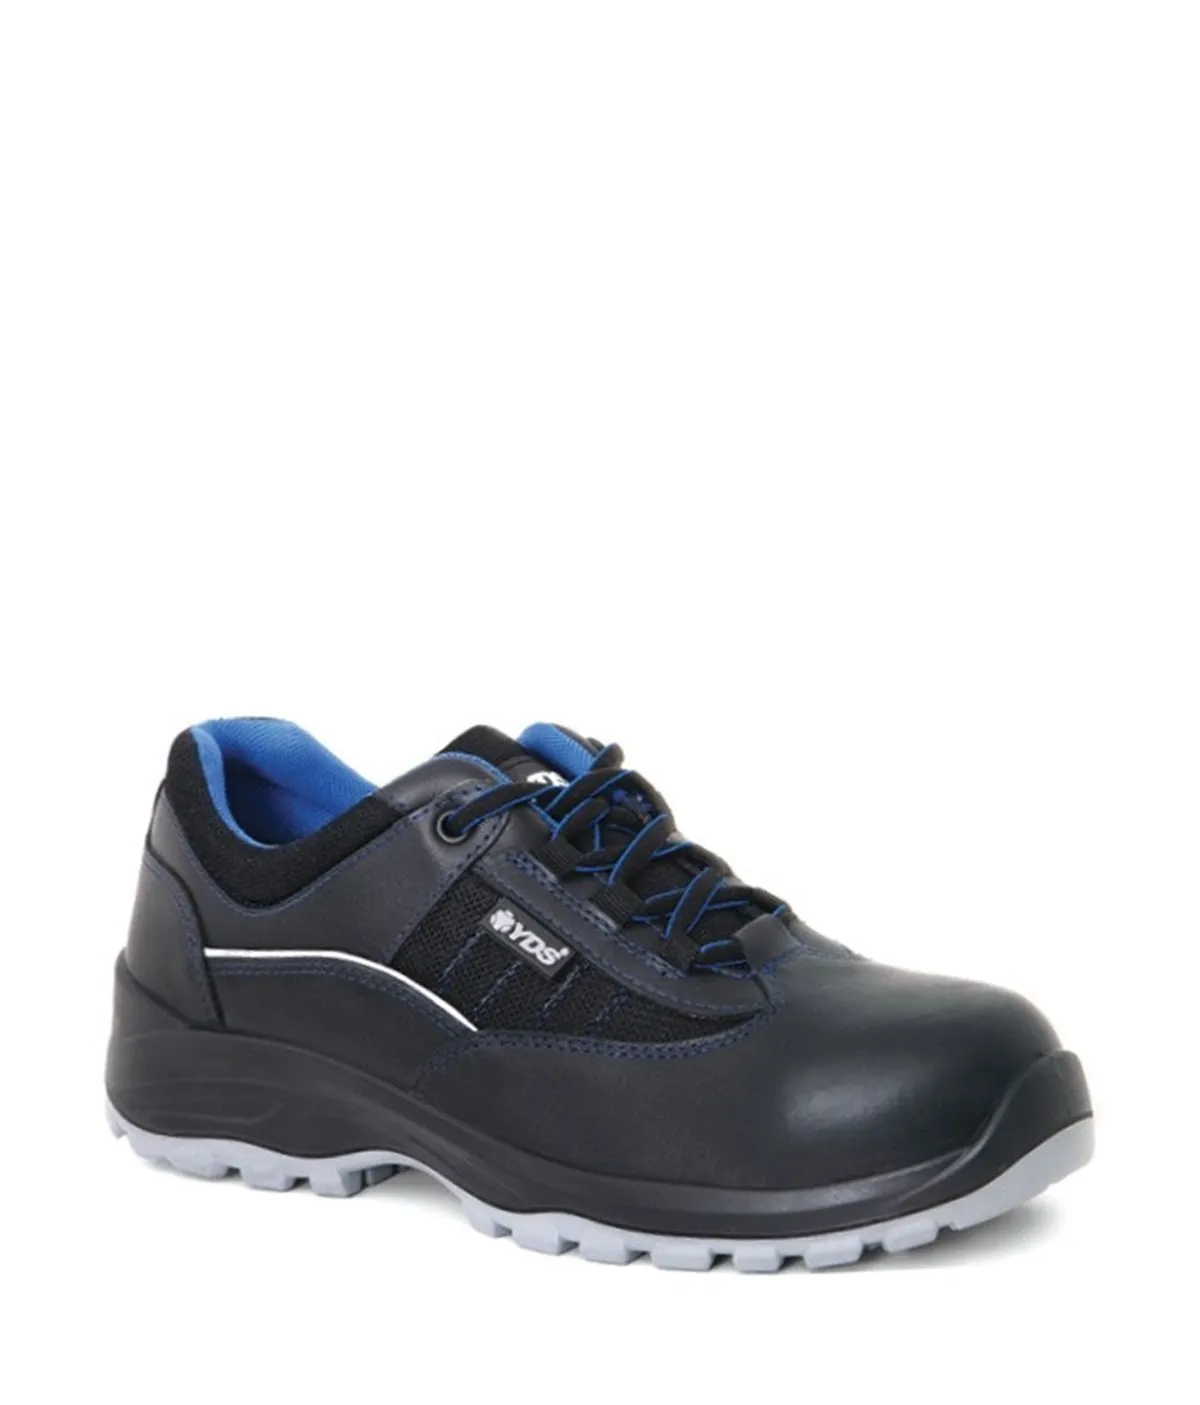 scarpe-antinfortunistiche-scarpe-da-lavoro-scarpe-da-lavoro-scarpe-antinfortunistiche-src-scarpe-antiscivolo-scarpe-resistenti-puntale-in-acciaio-indumenti-di-sicurezza